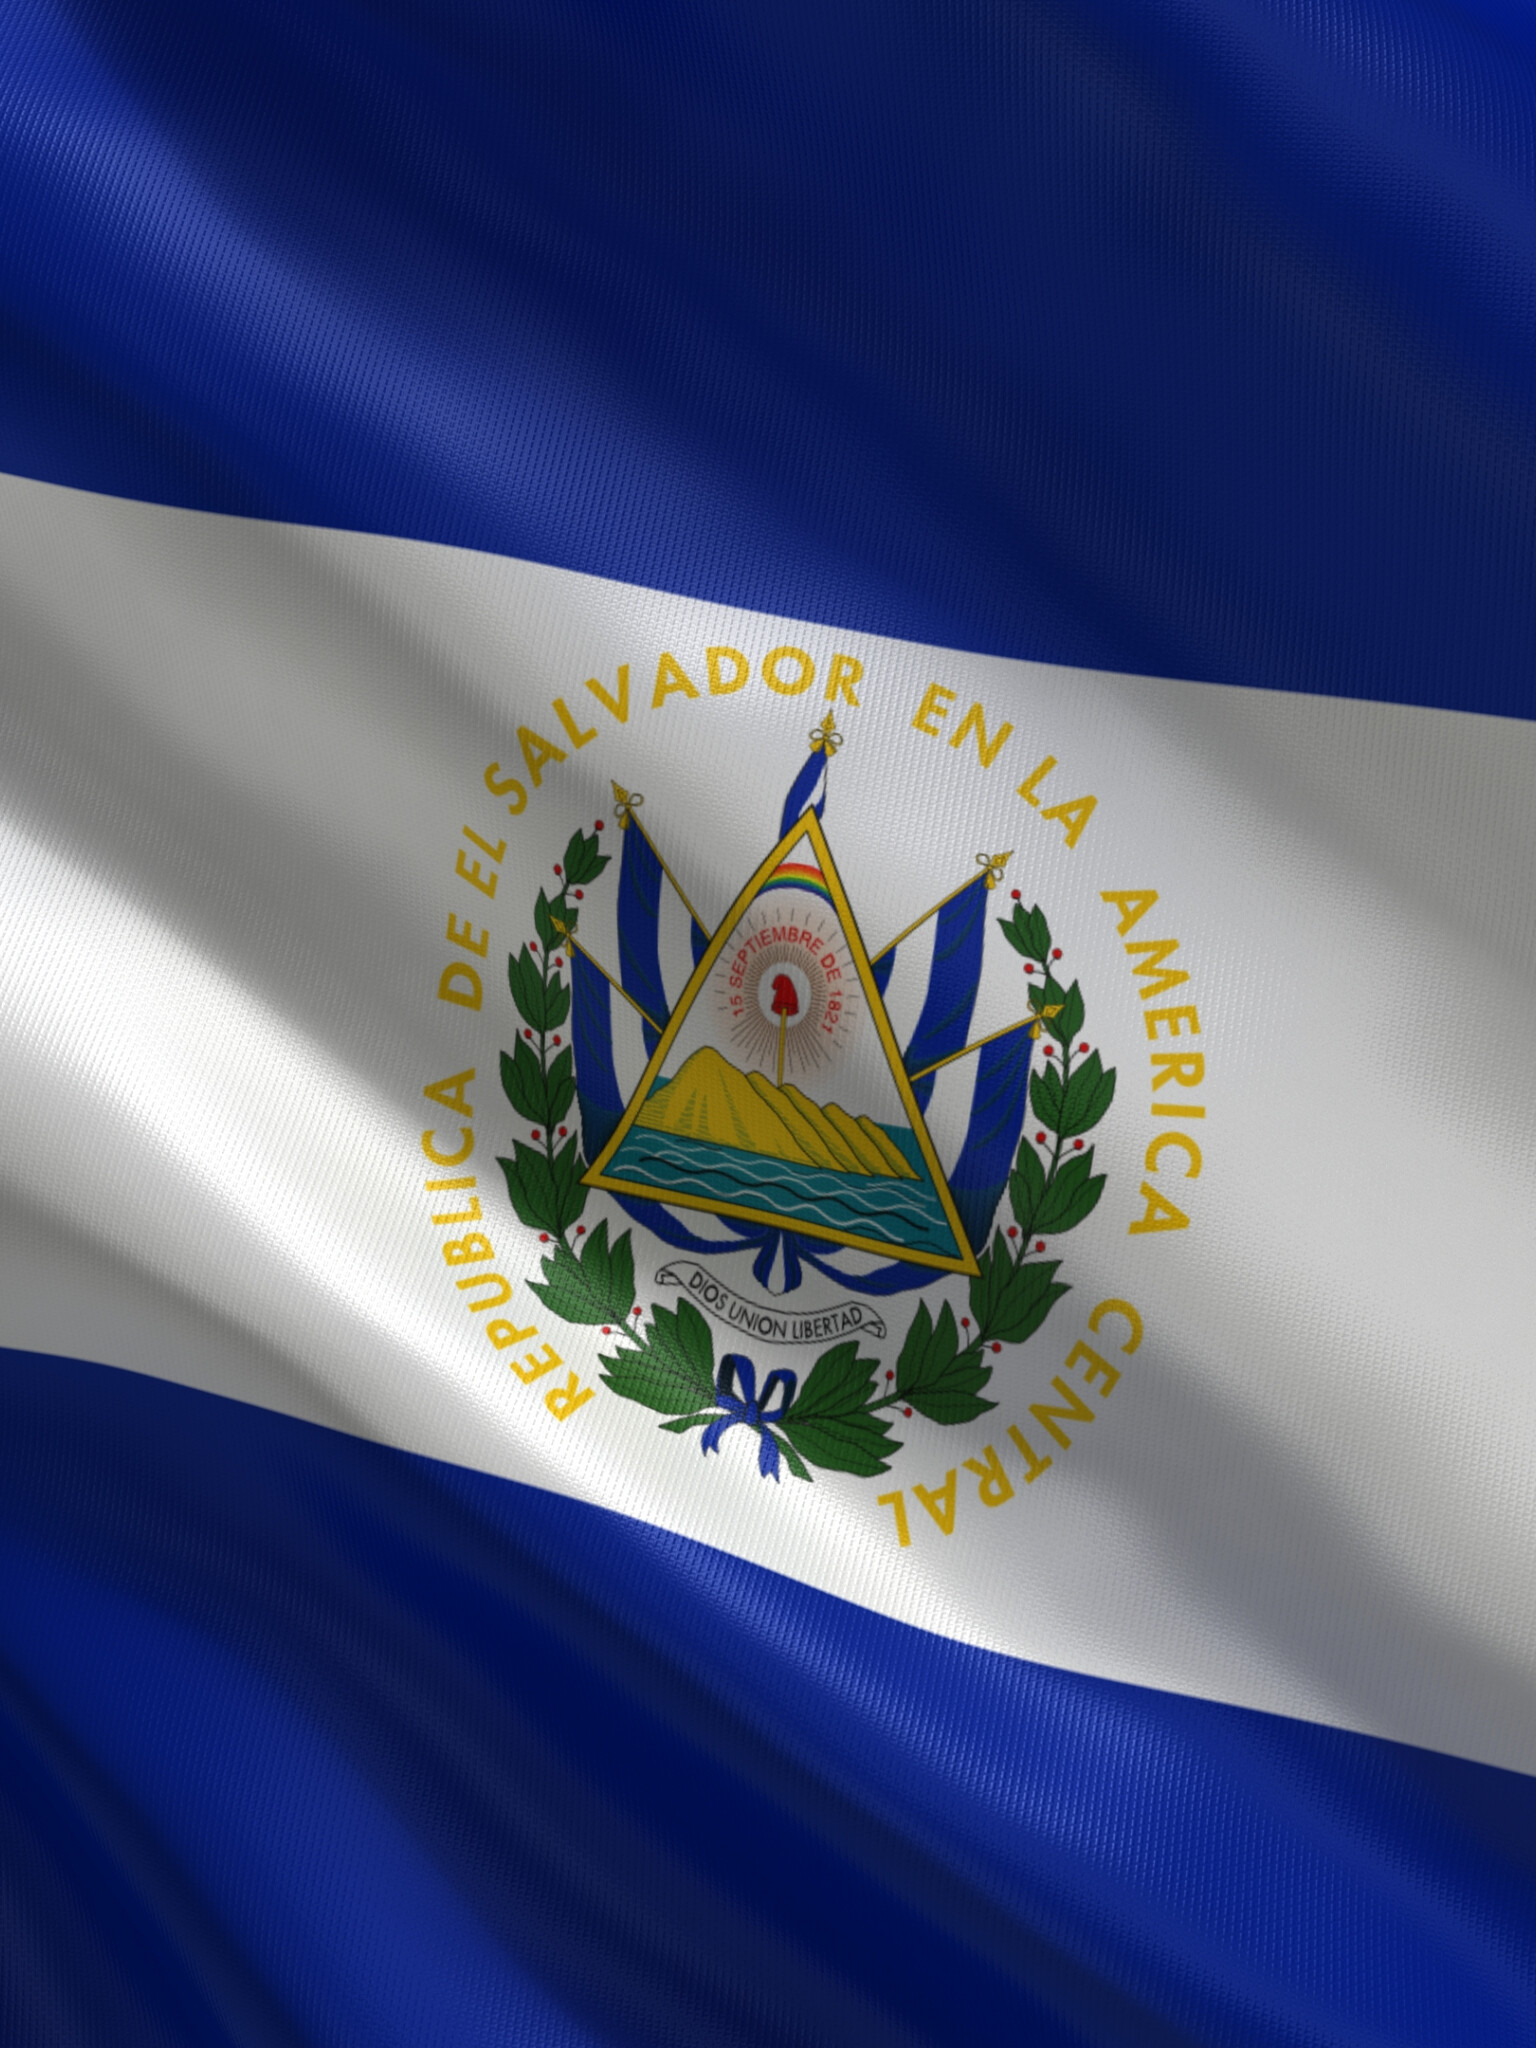 HD wallpaper, Mobile Hd Republic Of El Salvador Background, Patriotic Tribute, High Quality Image, Bandera De El Salvador, 1540X2050 Hd Phone, National Flag